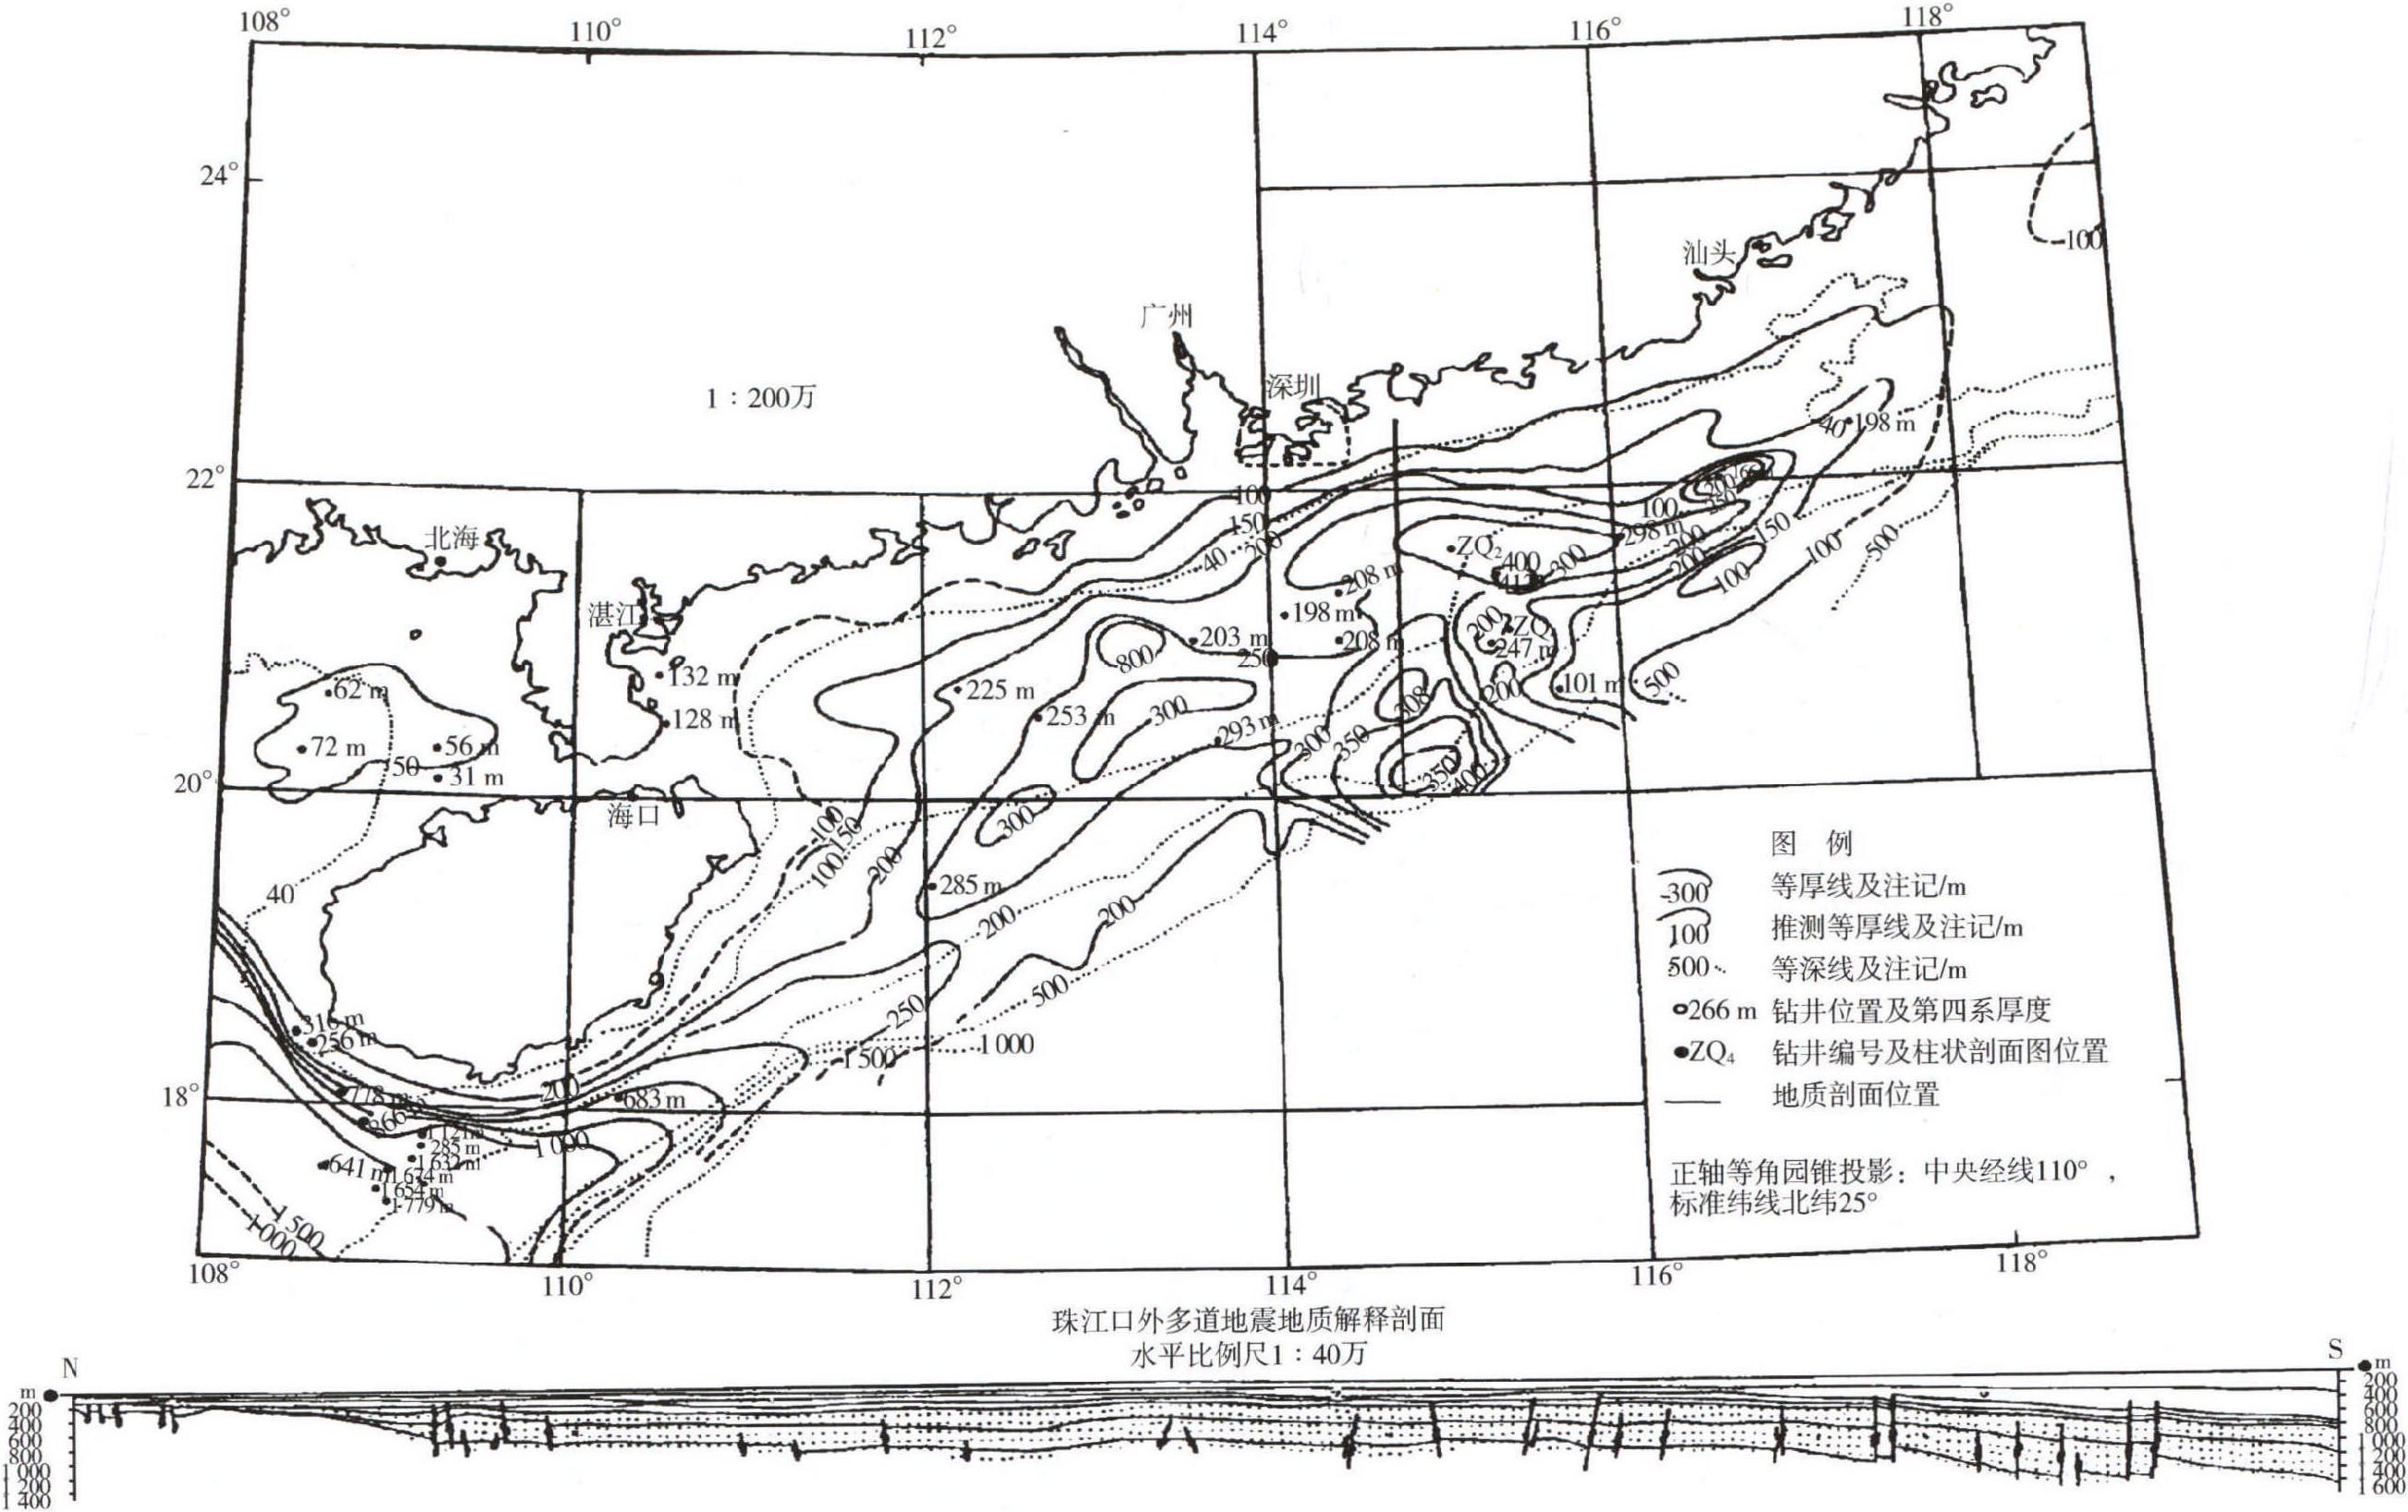 1.2.5 南海北部第四系等厚线图的编制及其分析